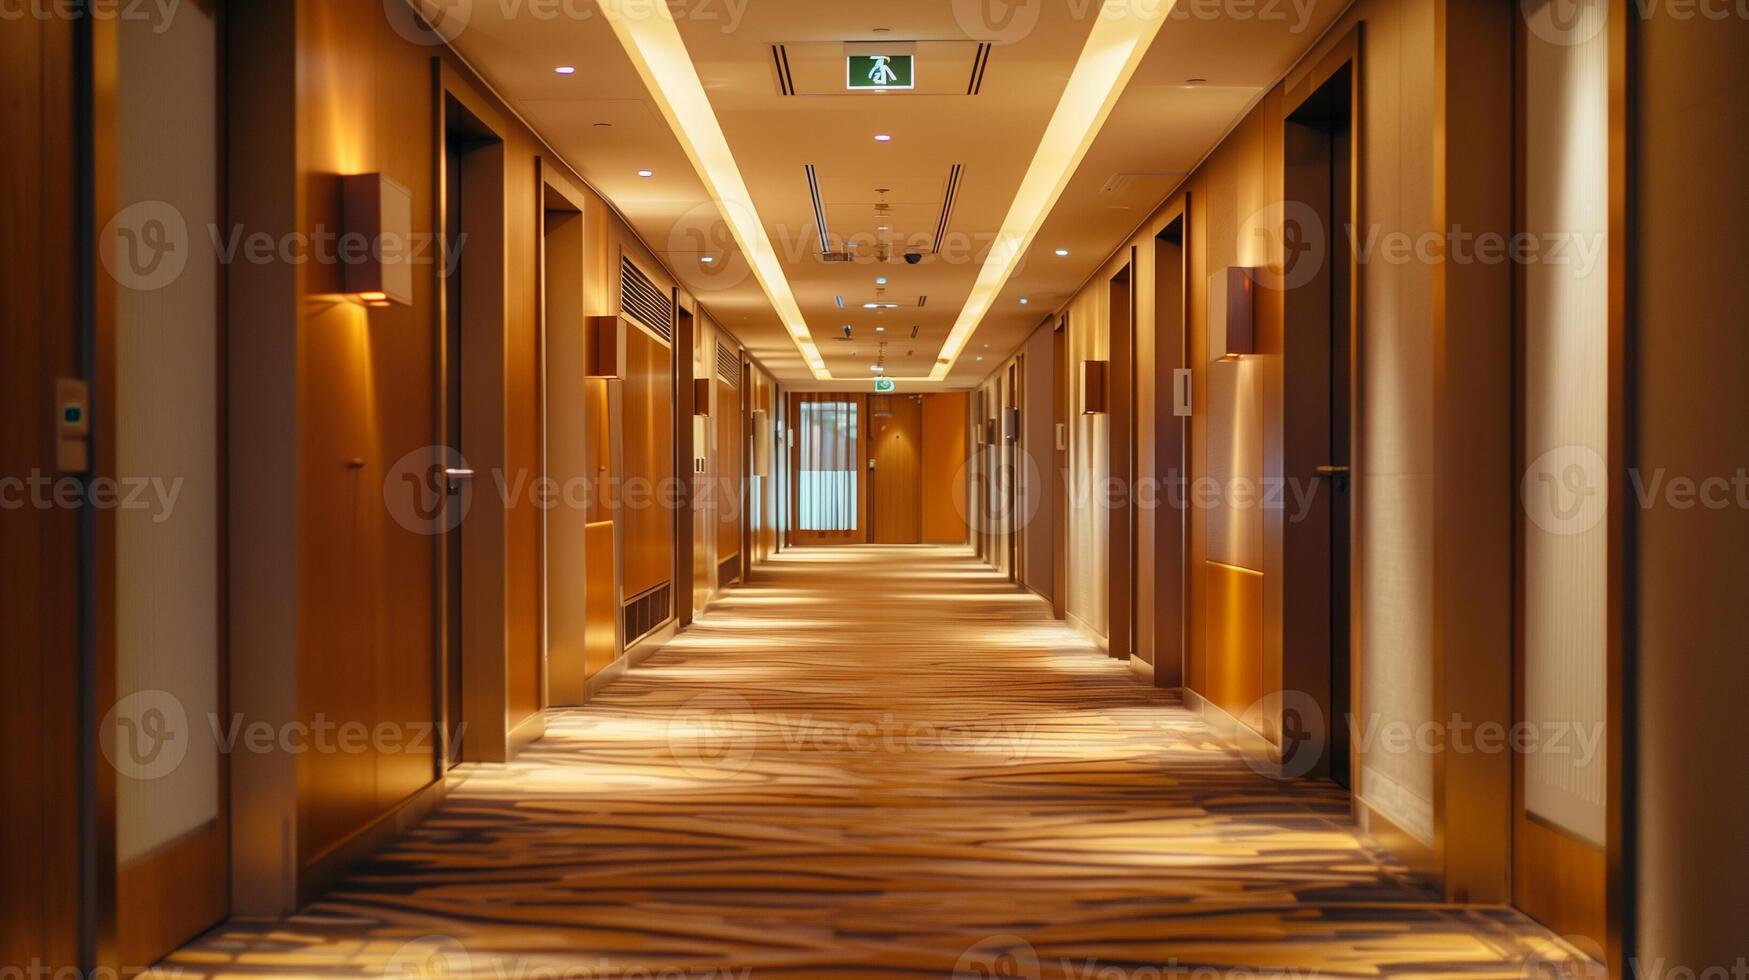 moderno hotel corredor con de madera pisos y calentar Encendiendo, adecuado para negocio viajar, hospitalidad, y real inmuebles conceptos foto